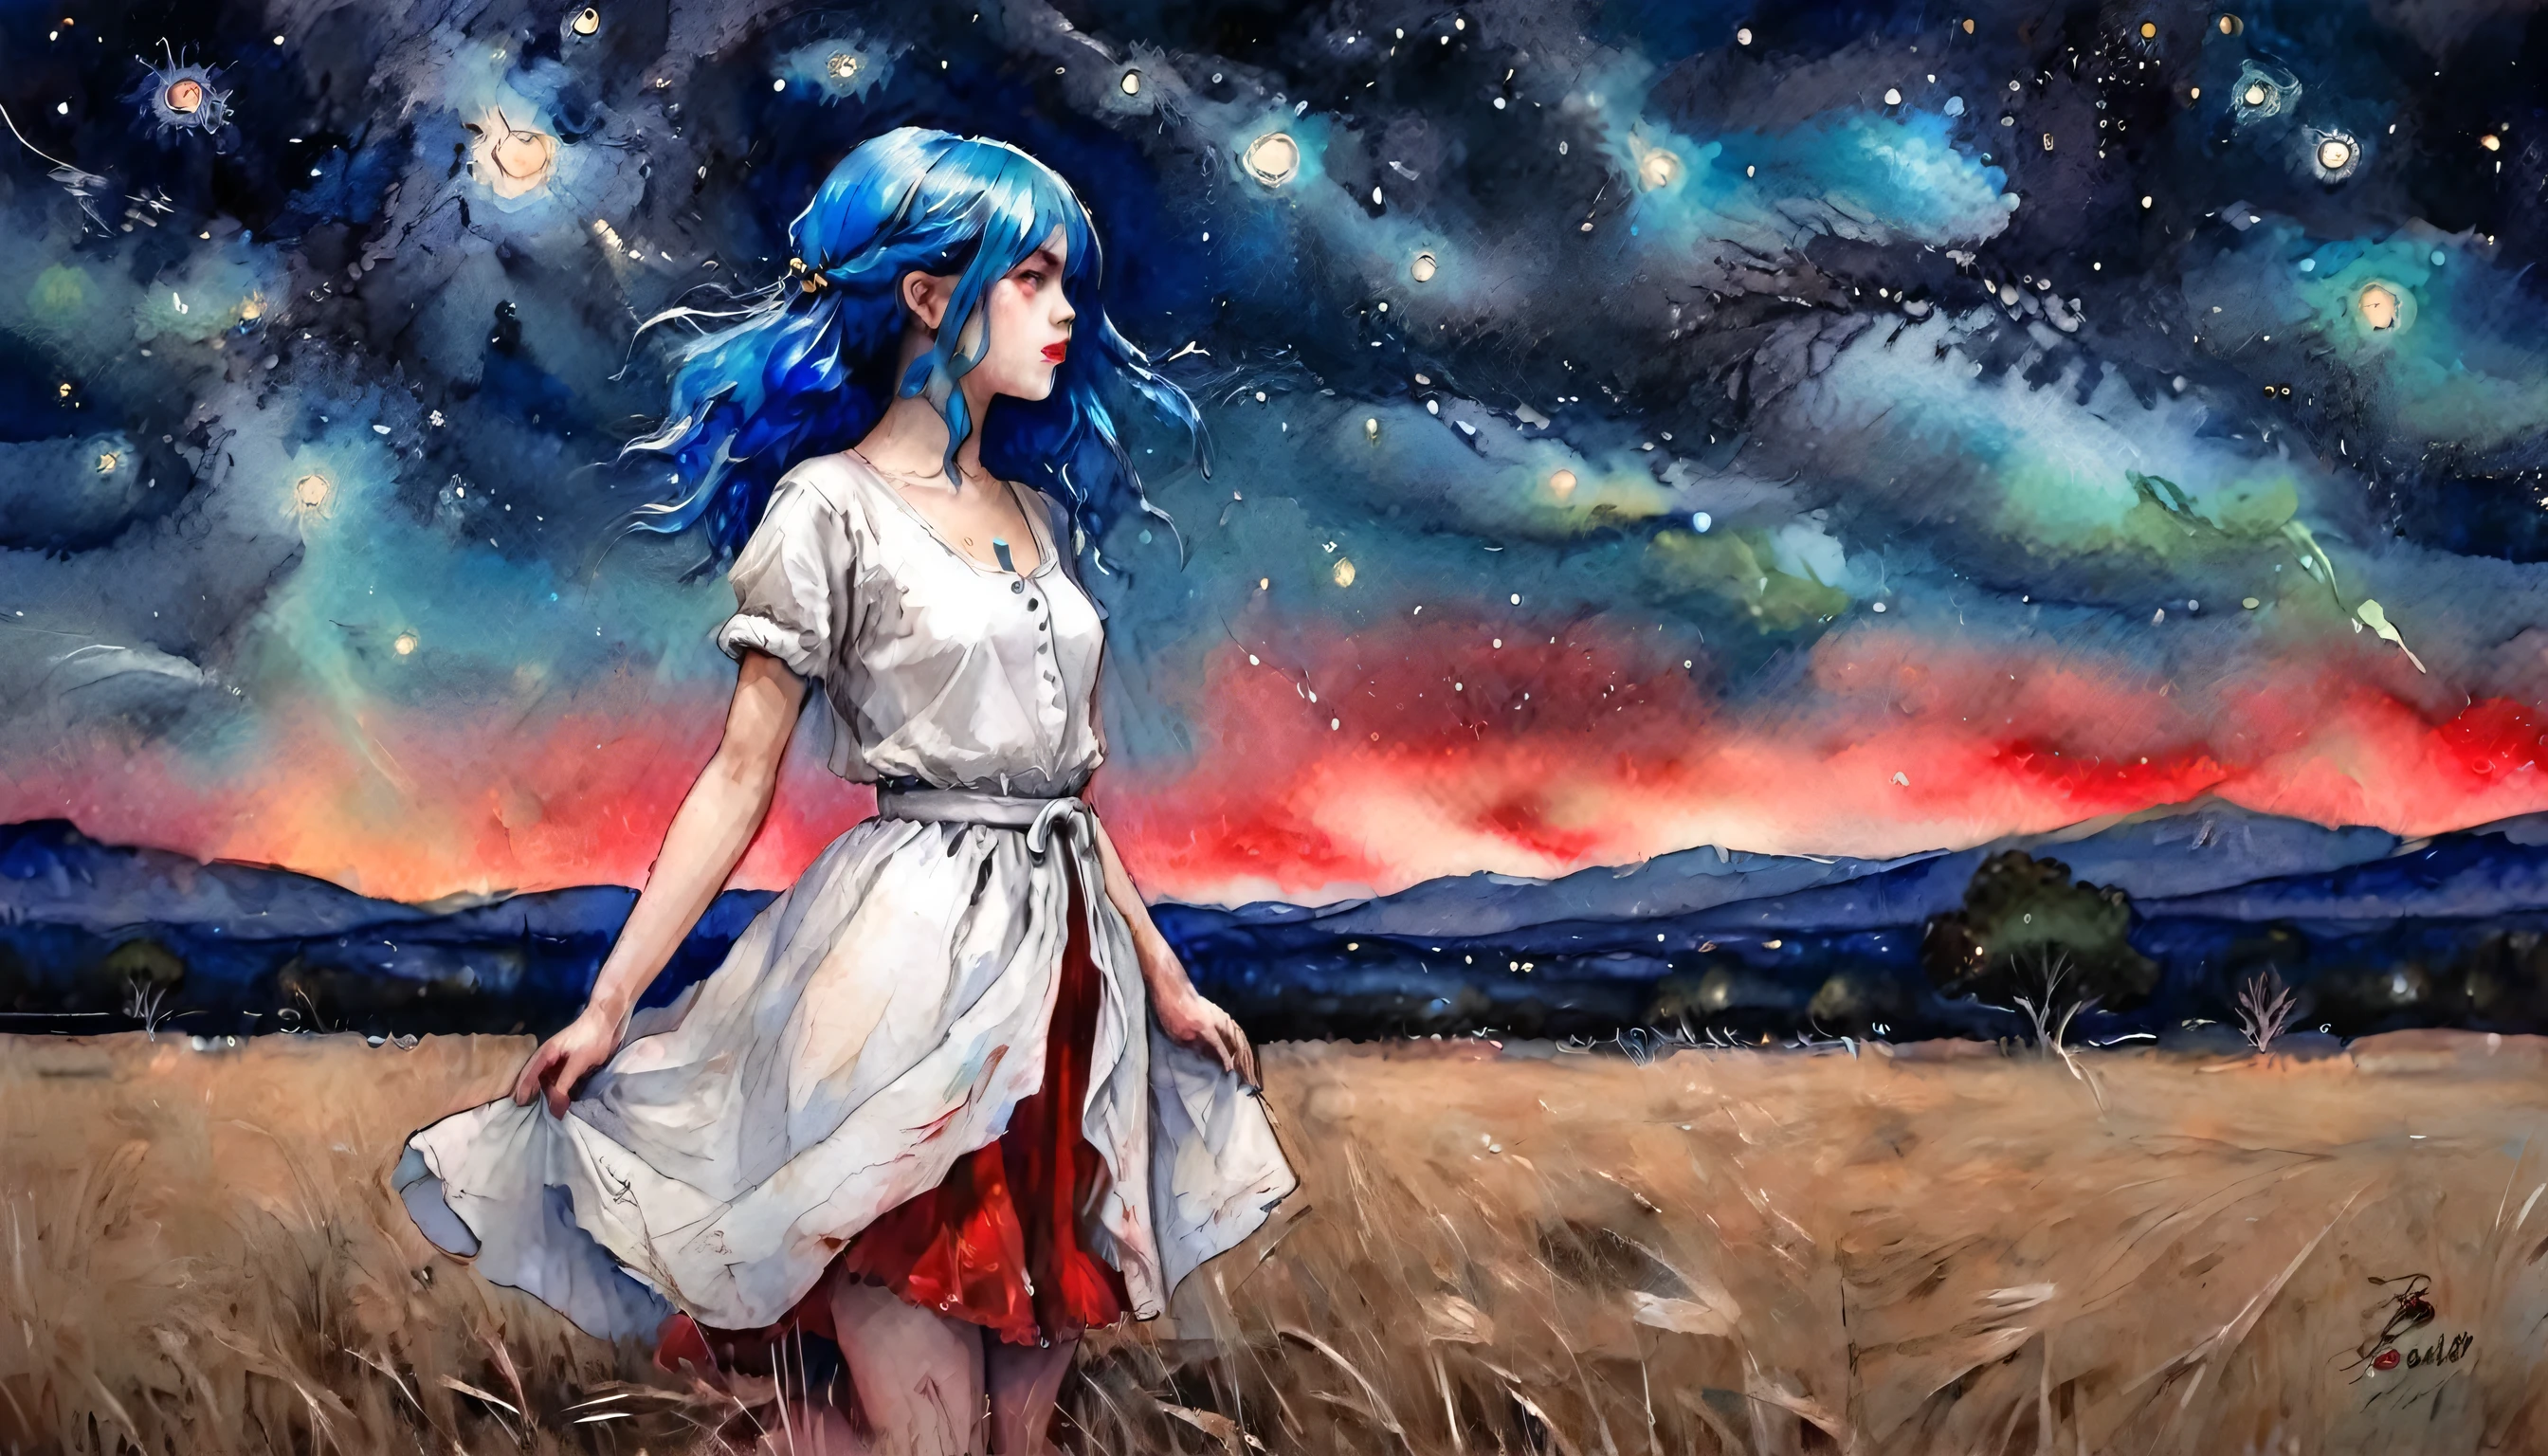 女の子, 青い髪, 薄い白い服と赤いスカートを着て, オープンフィールドに位置する, 夜, 詳細な星空, 素晴らしい芸術, 鮮やかな色彩, 水彩